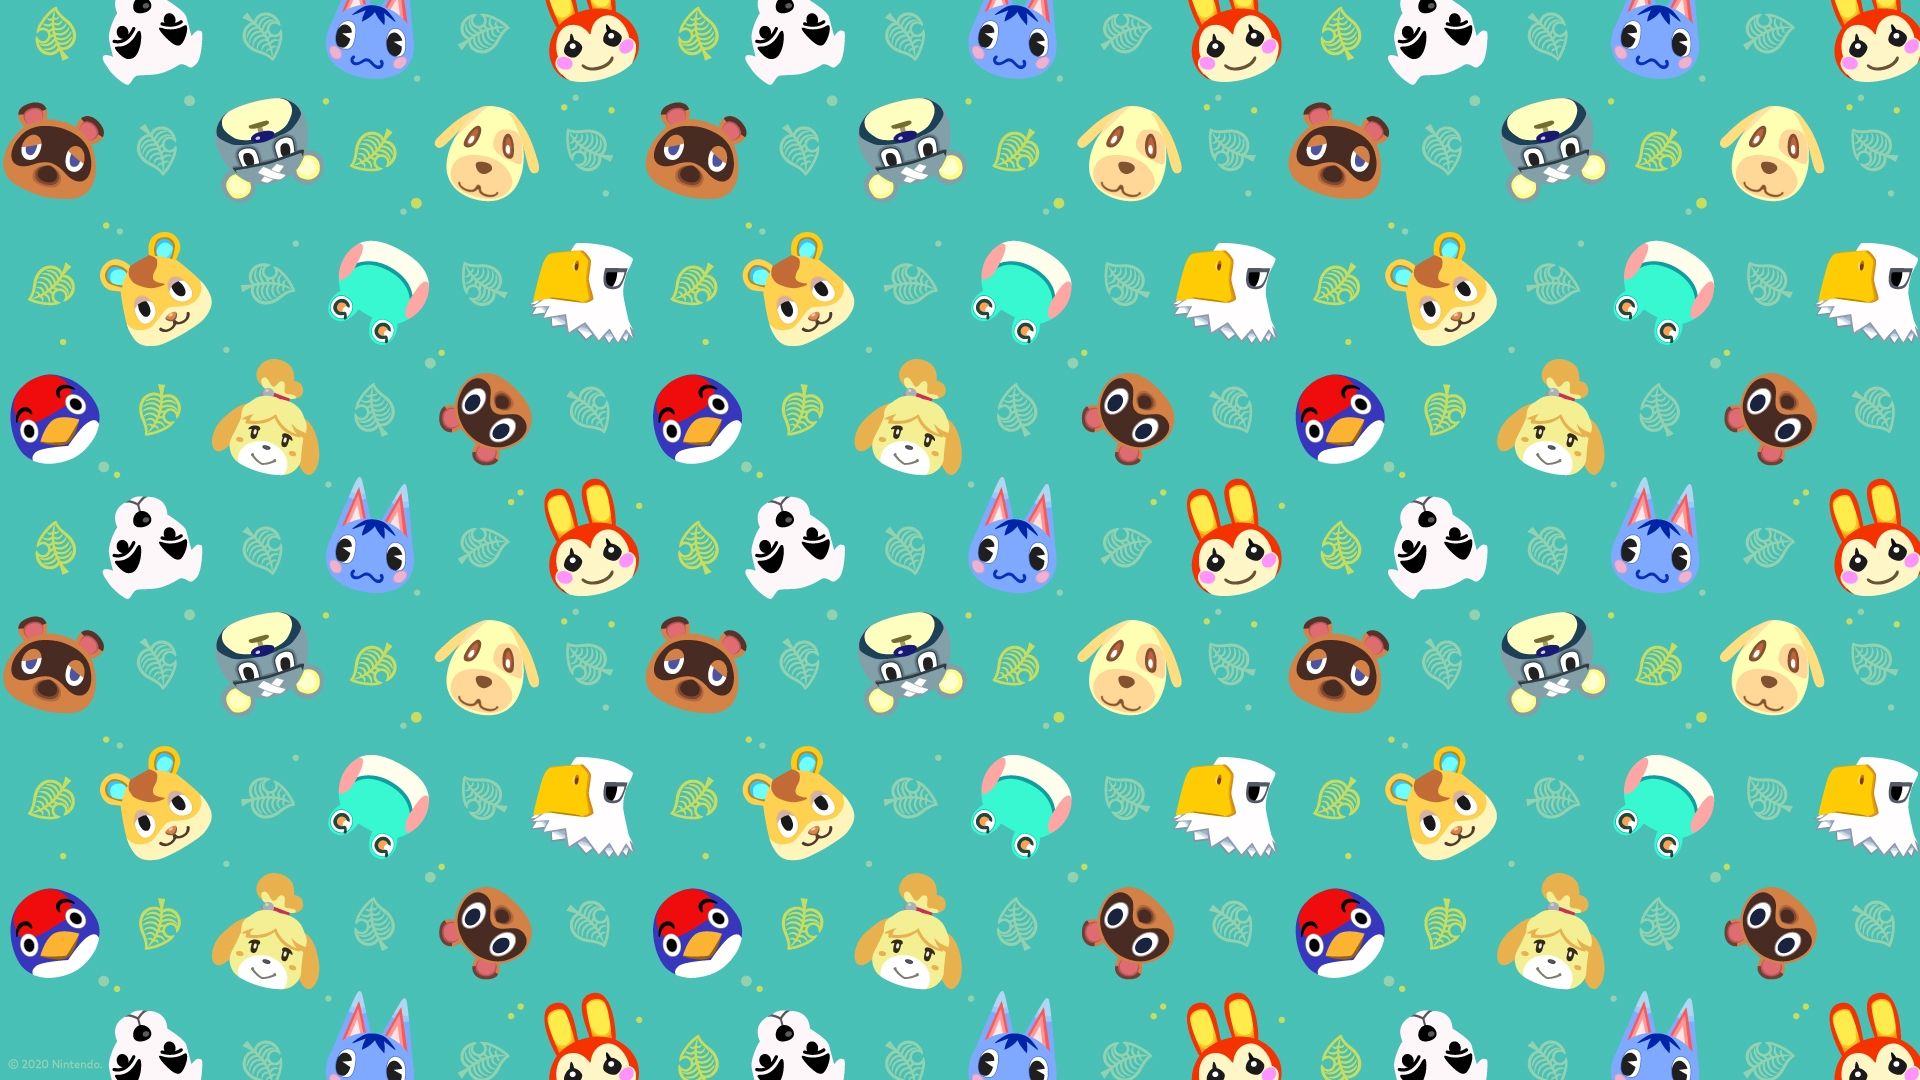 Bạn là một fan hâm mộ của Animal Crossing? Hình nền desktop Animal Crossing sẽ khiến bạn tự động bị cuốn hút vào thế giới đáng yêu và thú vị này. Tải ngay những hình nền đẹp mắt này để trang trí cho máy tính của bạn.